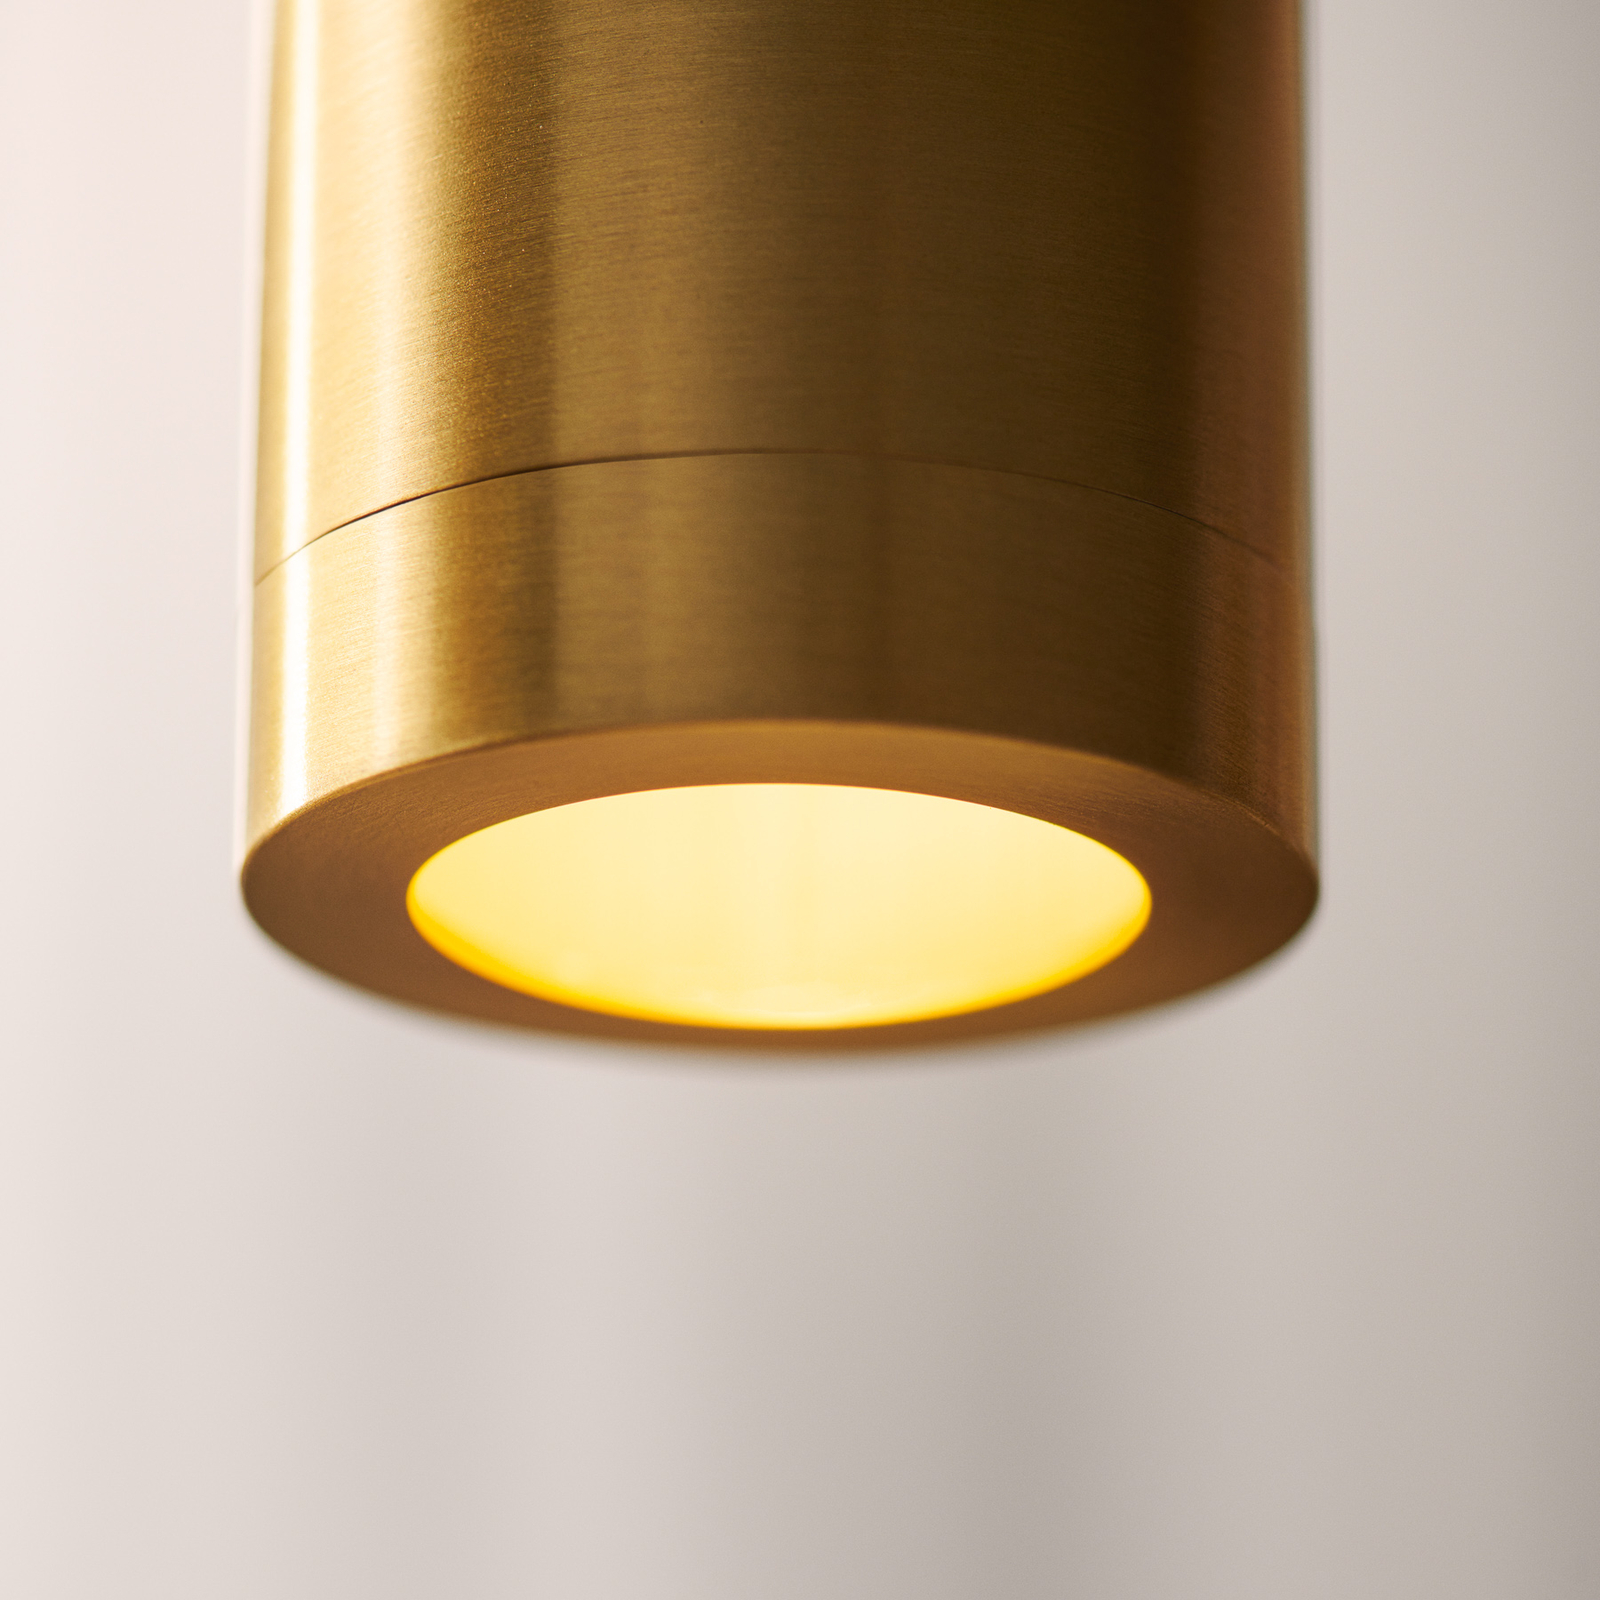 Κρεμαστό φωτιστικό Liberty Spot, χρυσό χρώμα, ύψος 25 cm